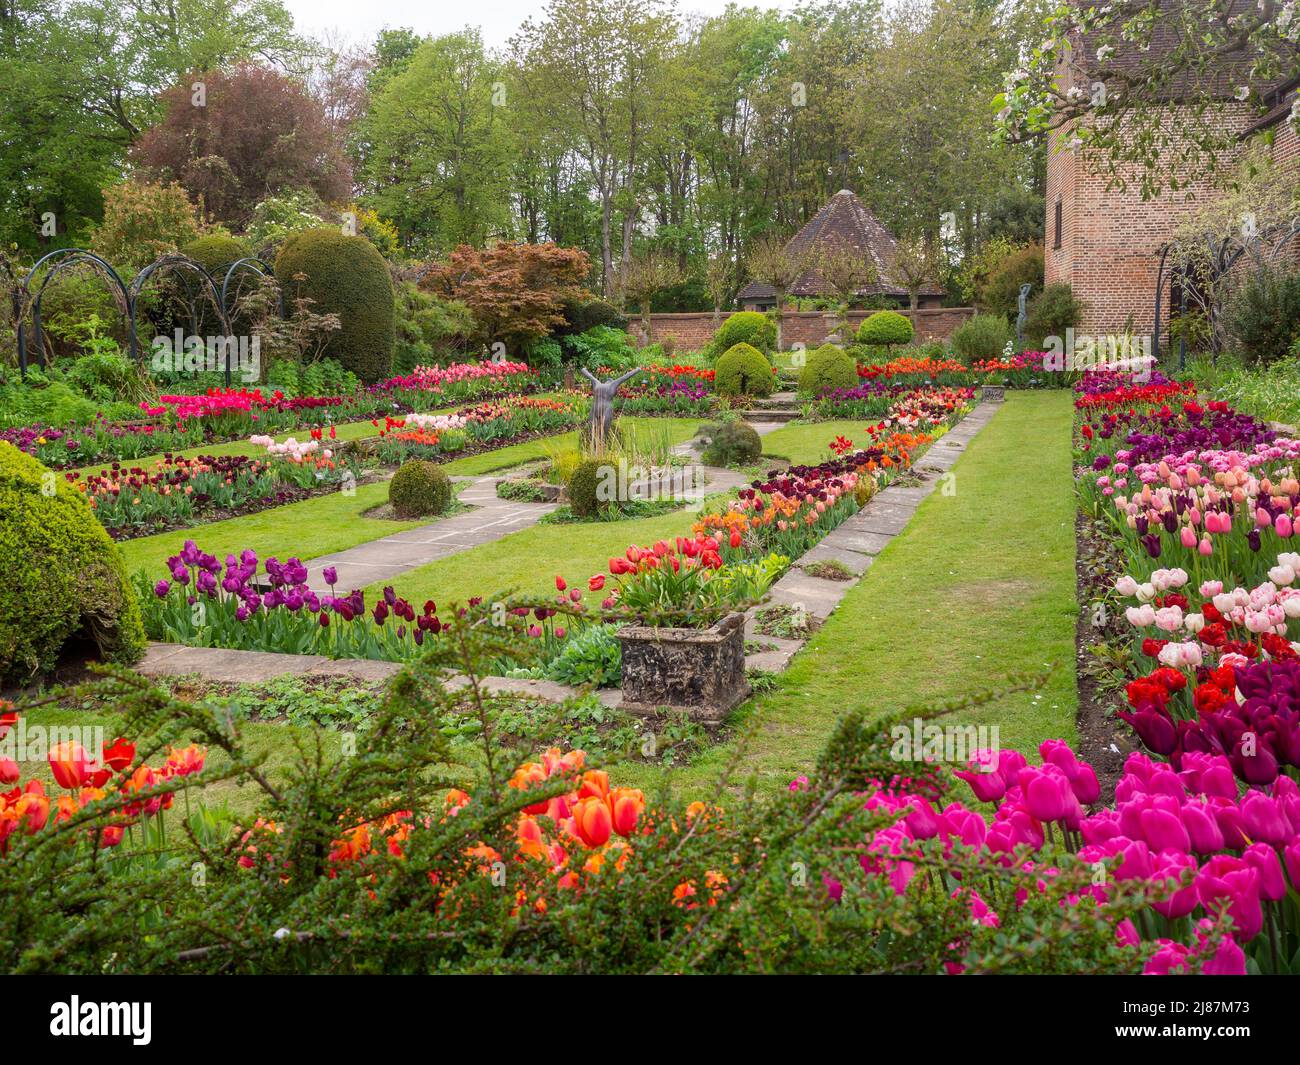 Chenies Manor Garden. Schöner historischer versunkener Garten mit Zierteich, Tulpendarstellung in voller Farbe; aufgenommen unter dem Bramley-Apfelbaum. Stockfoto